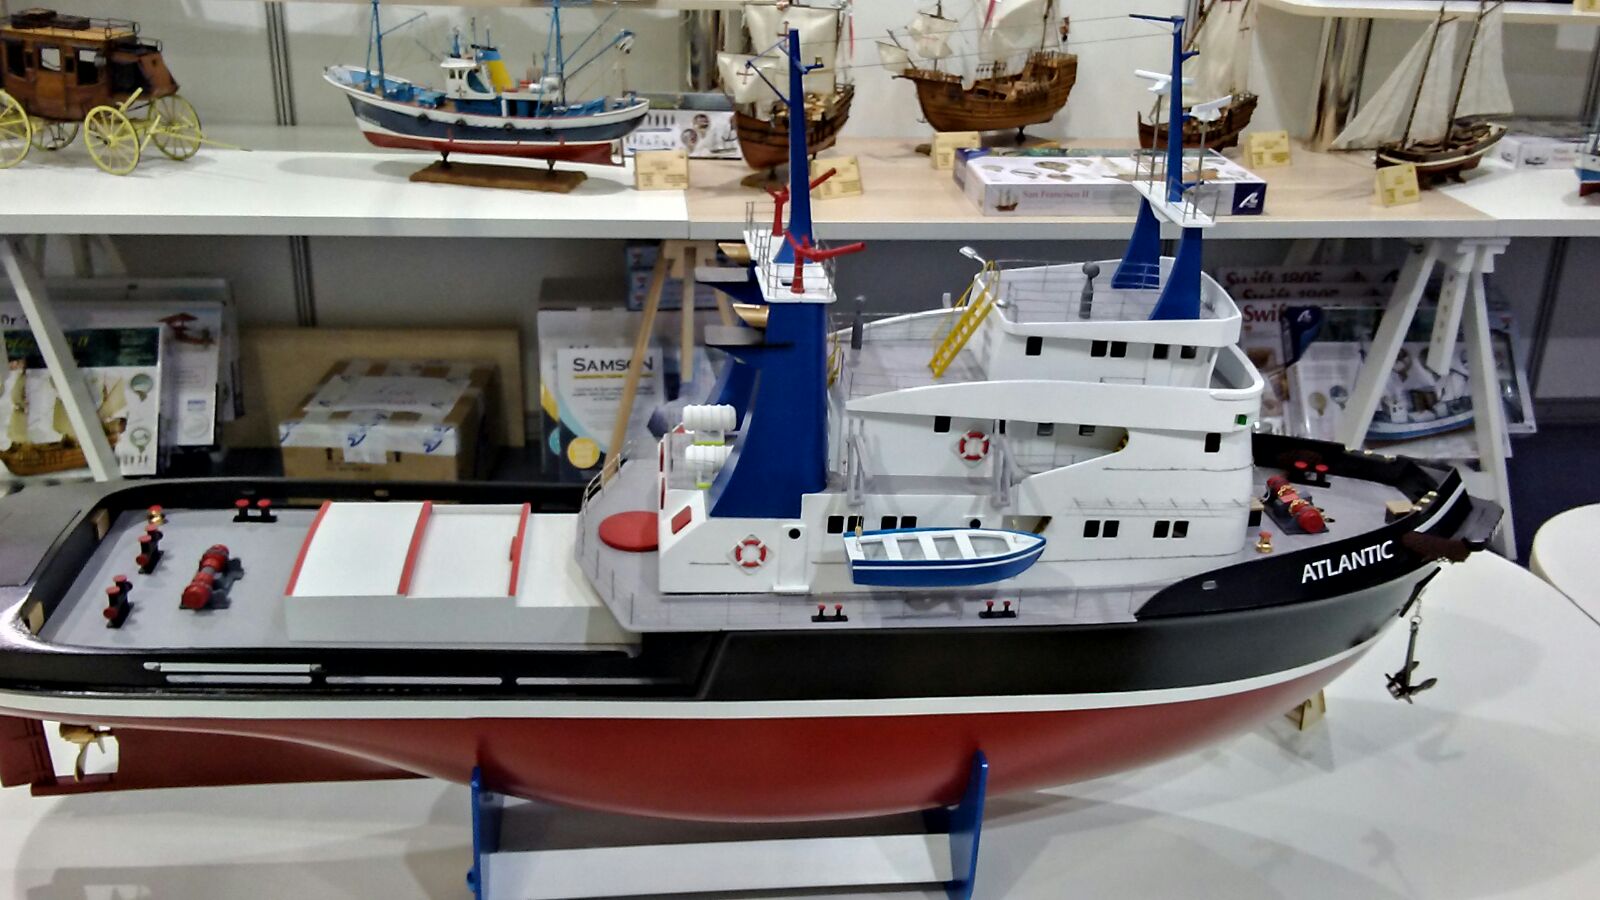 Modélisme Naval. Maquette en bois et ABS Bateau Remorqueur Atlantic 1/50 (20210).